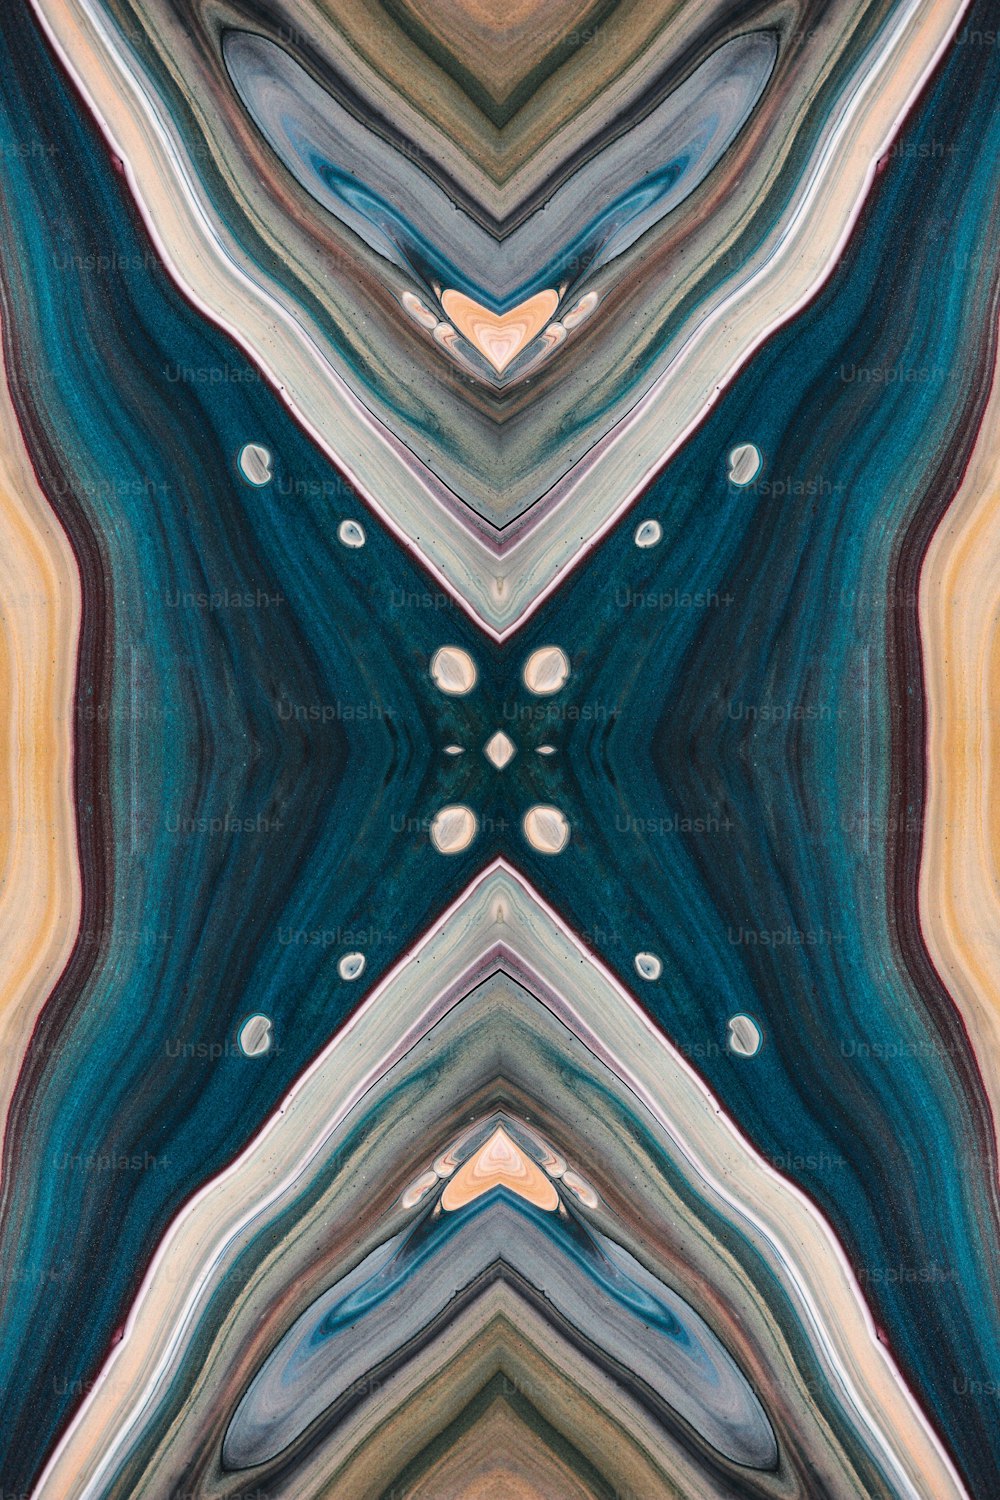 ein Bild eines abstrakten Musters aus verschiedenen Farben